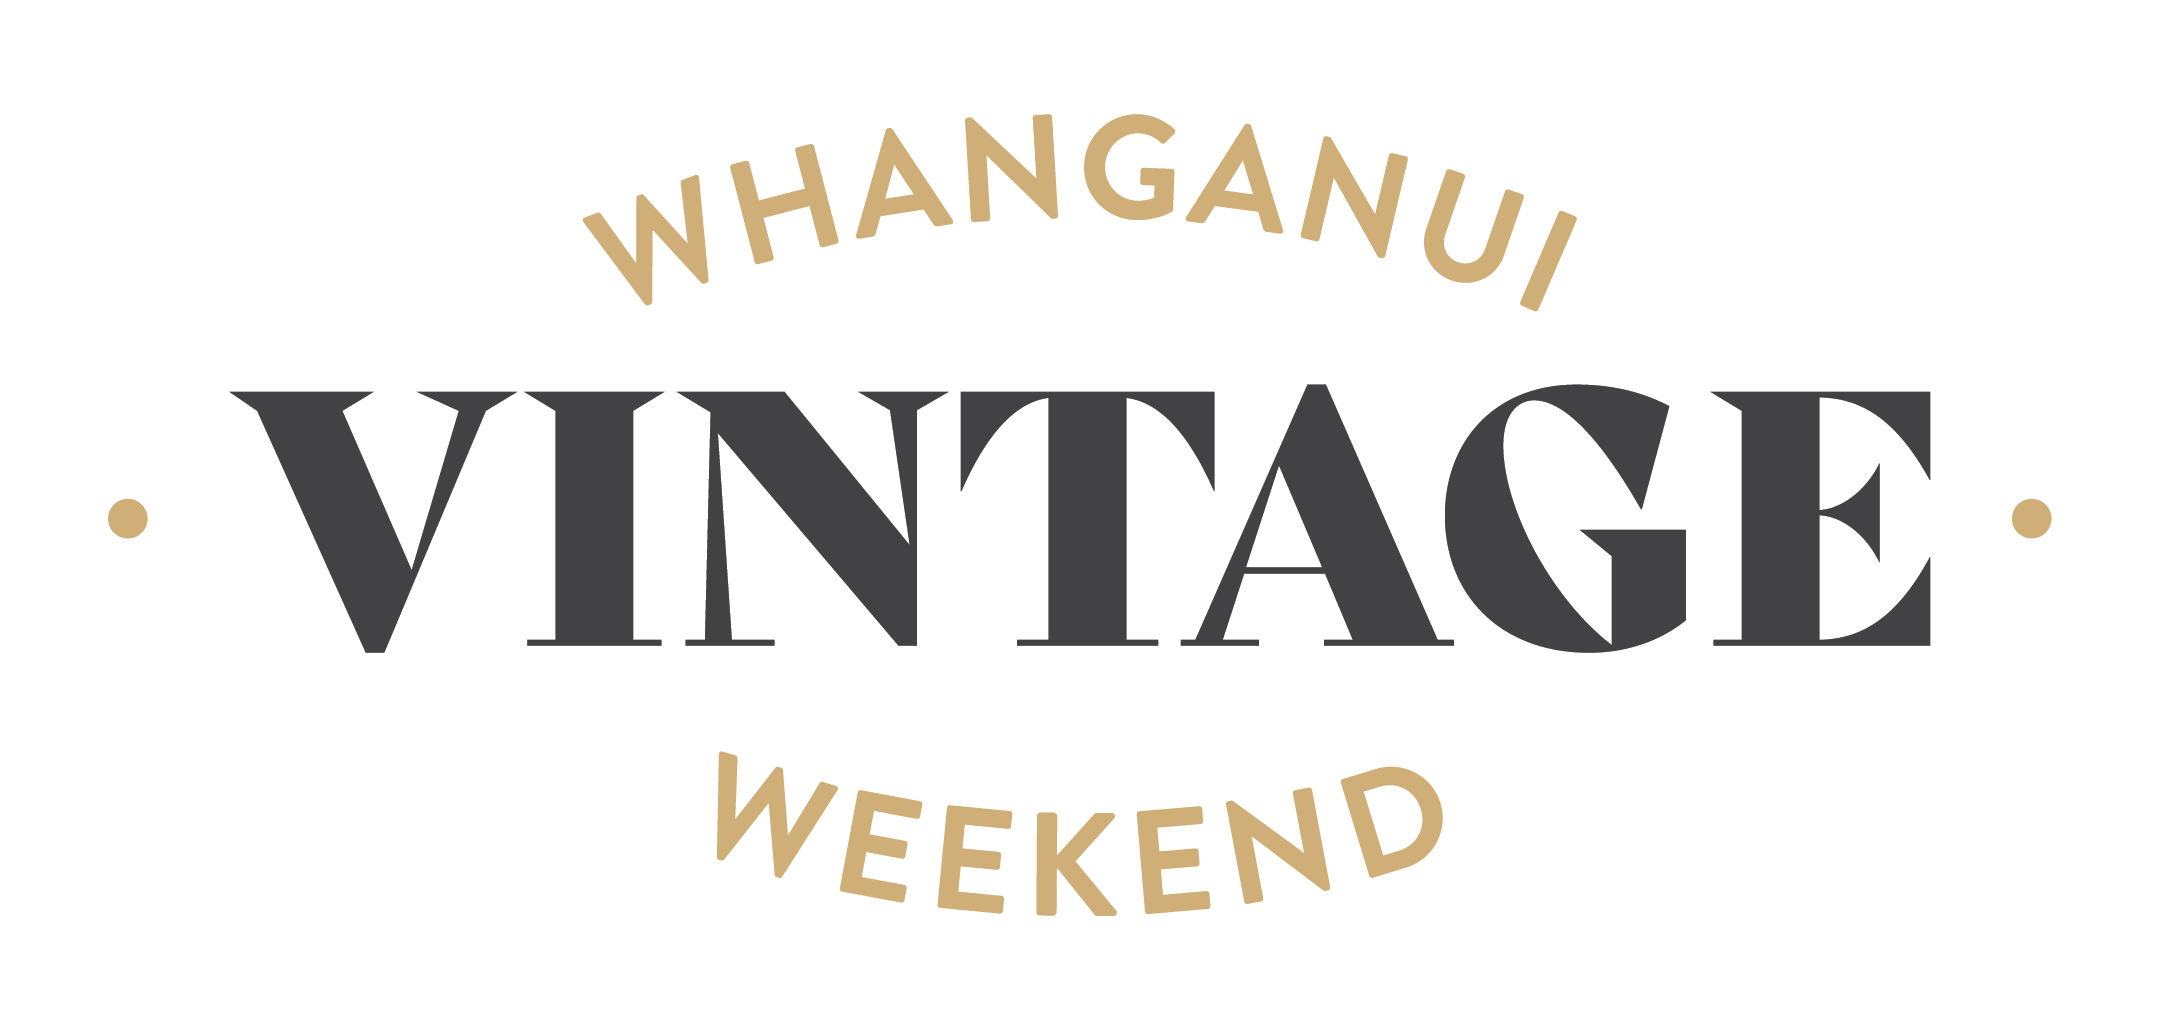 Whanganui Vintage Weekend